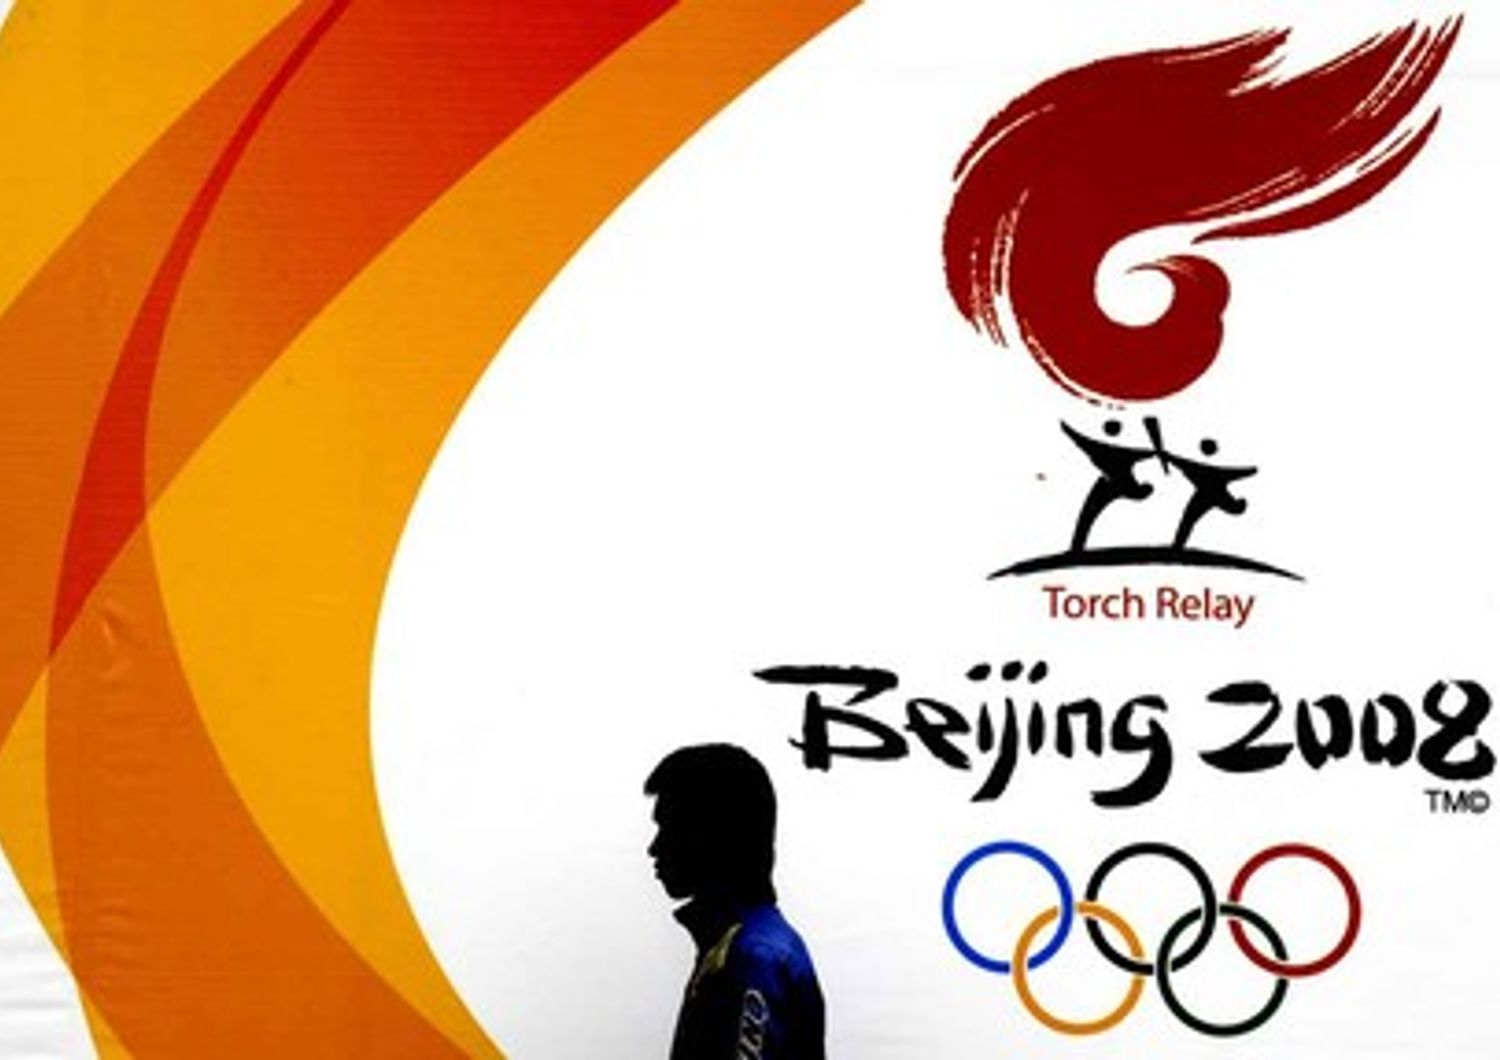 Positivi al doping 31 atleti dei Giochii di Pechino 2008